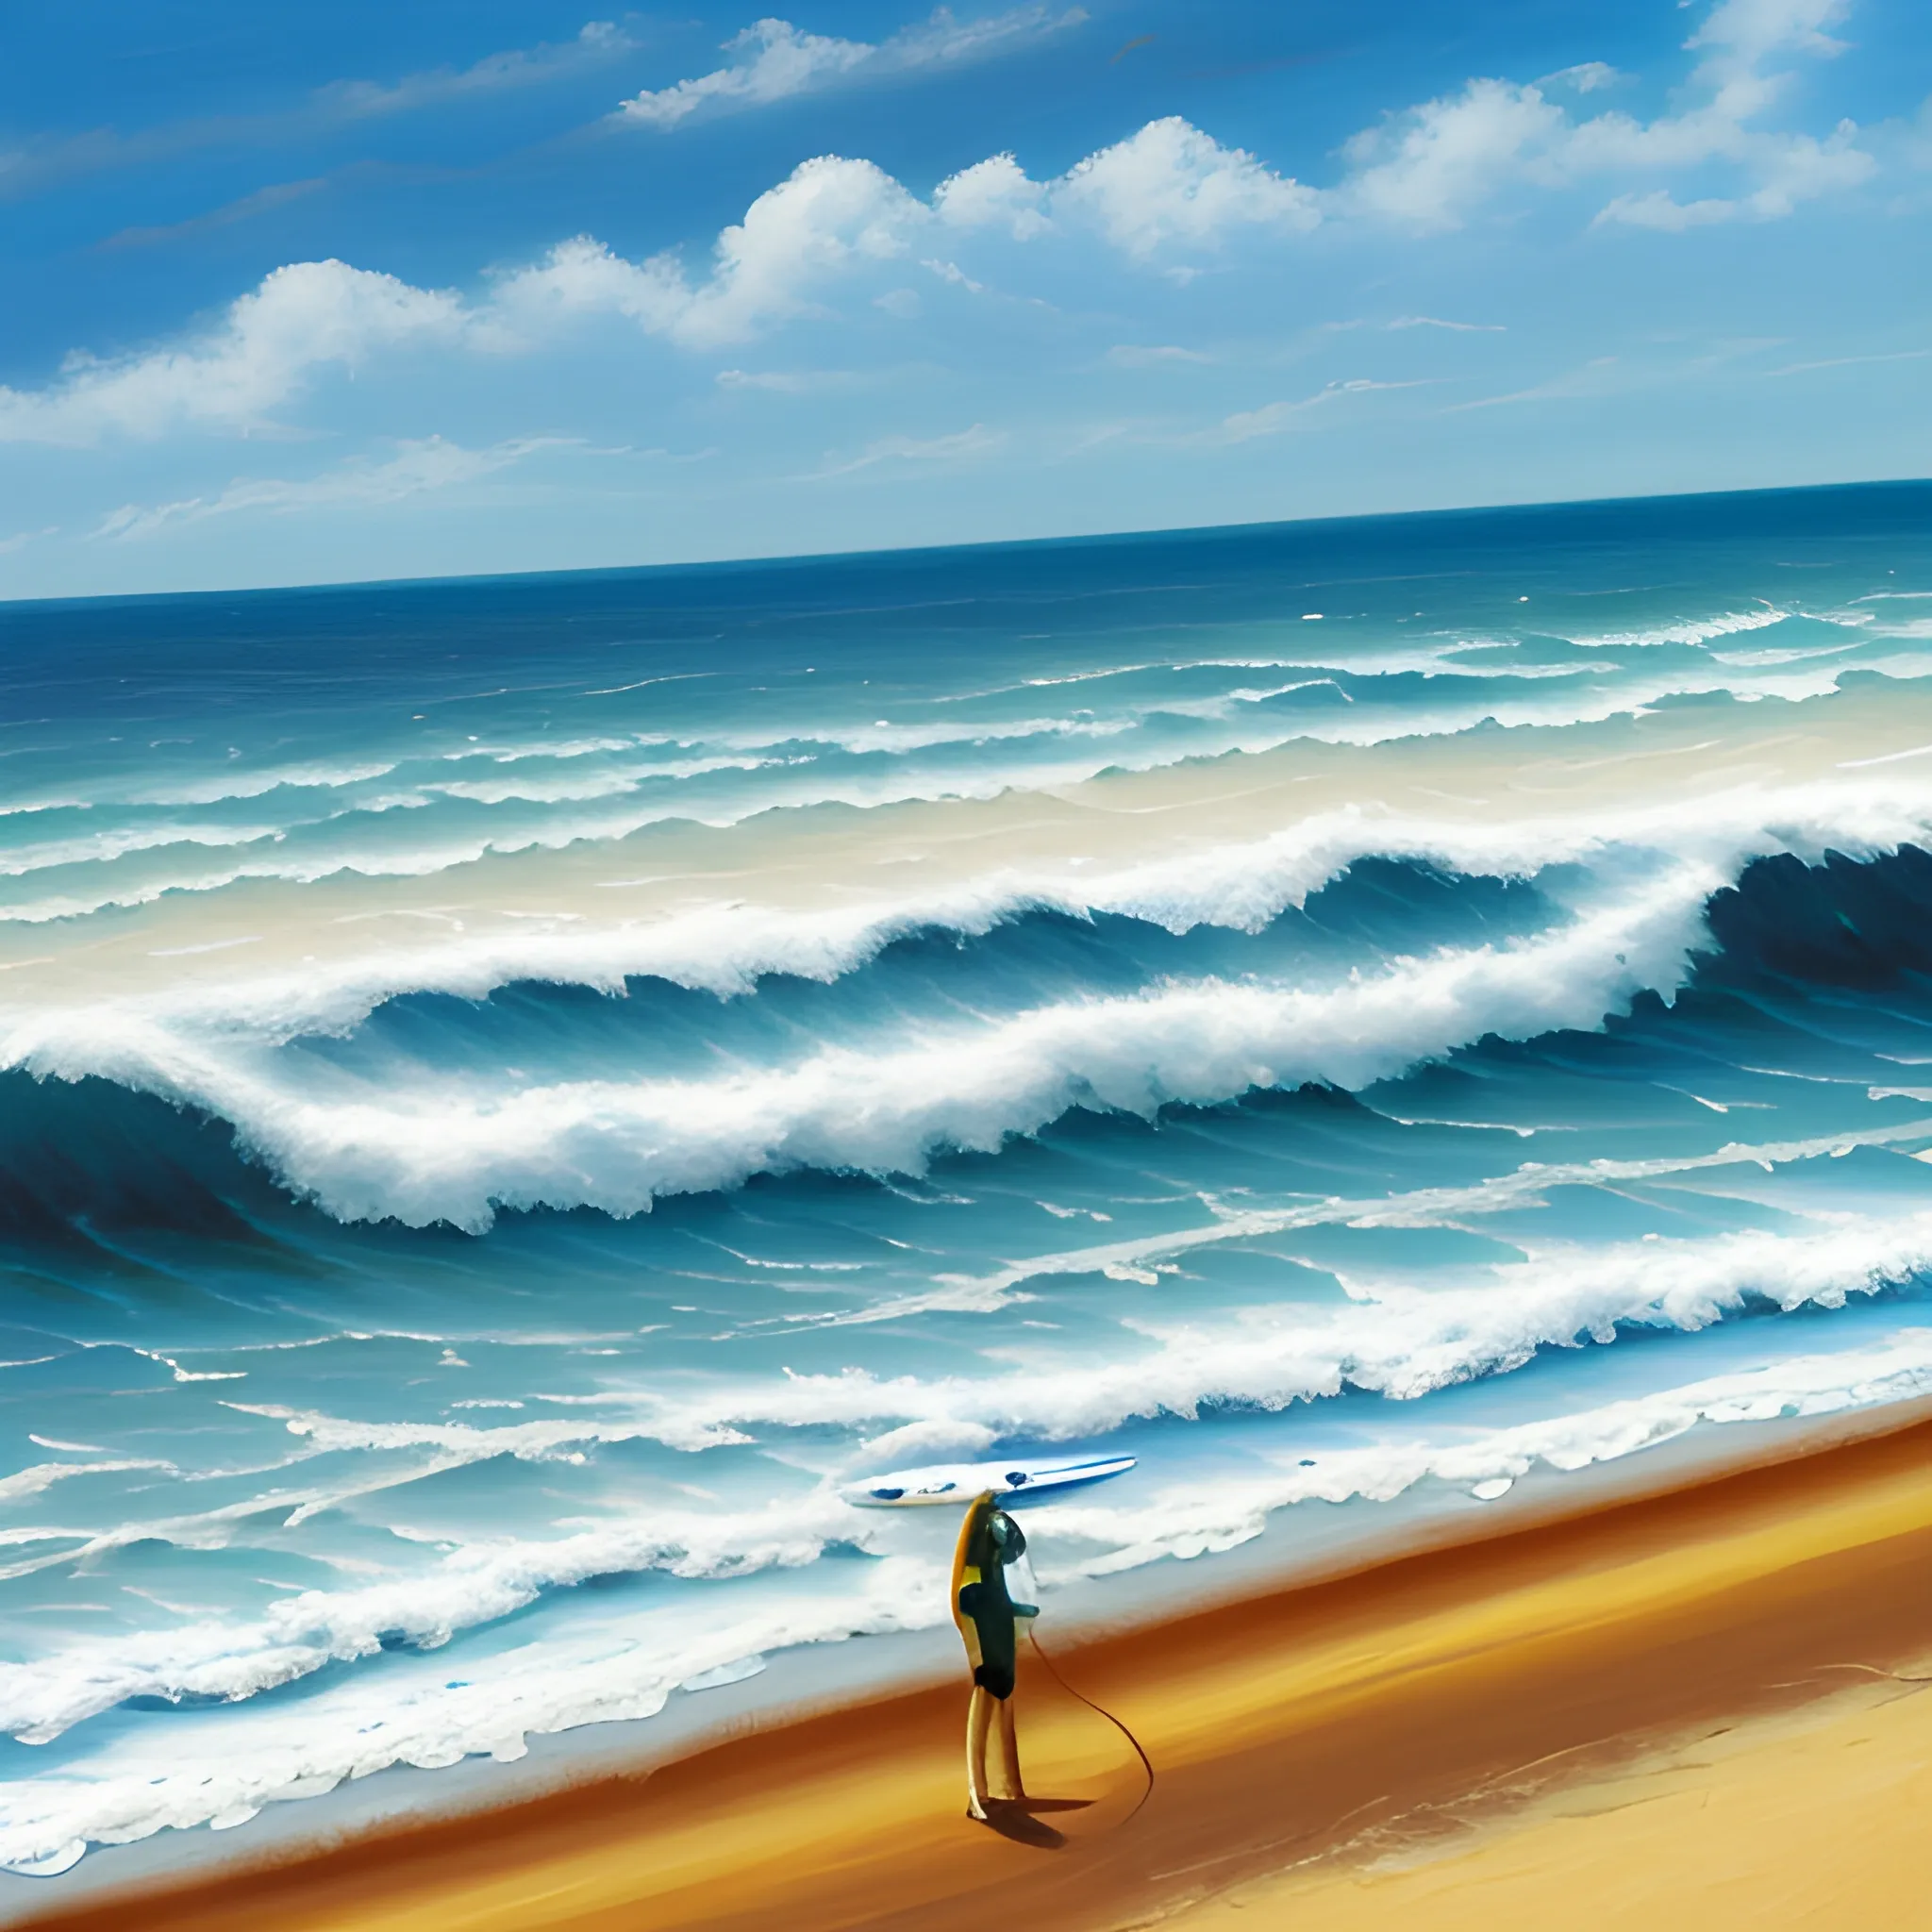 
LOGO PERFECT BEACH SUN PALMER SEA SURF 
,Oil Painting